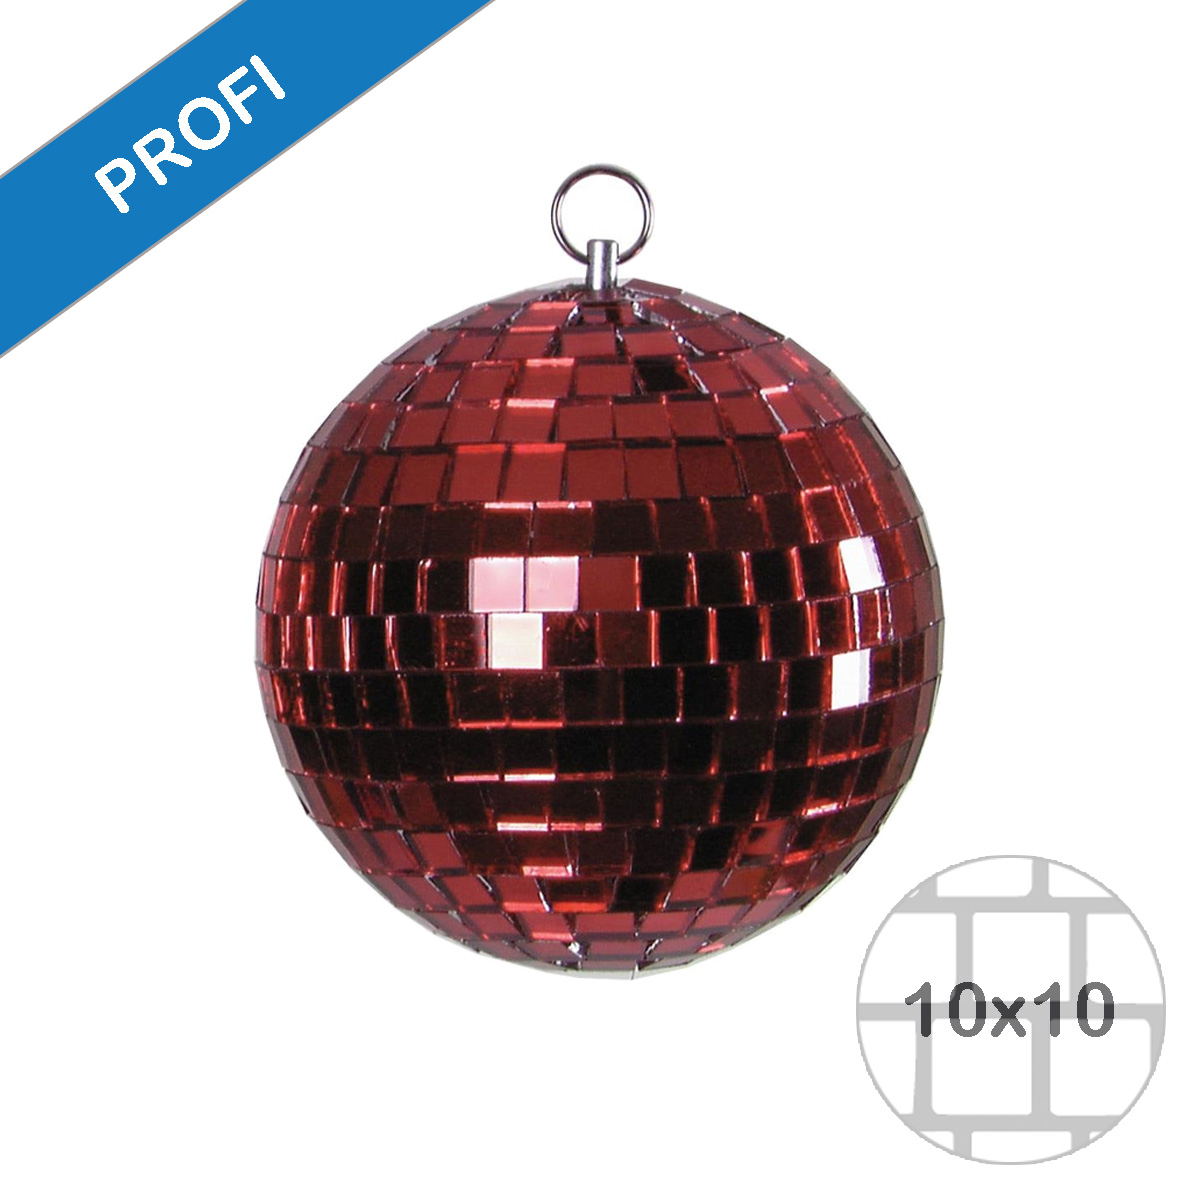 Spiegelkugel 20cm farbig rot- Diskokugel (Discokugel) zur Dekoration und Party- Echtglas - mirrorball rot